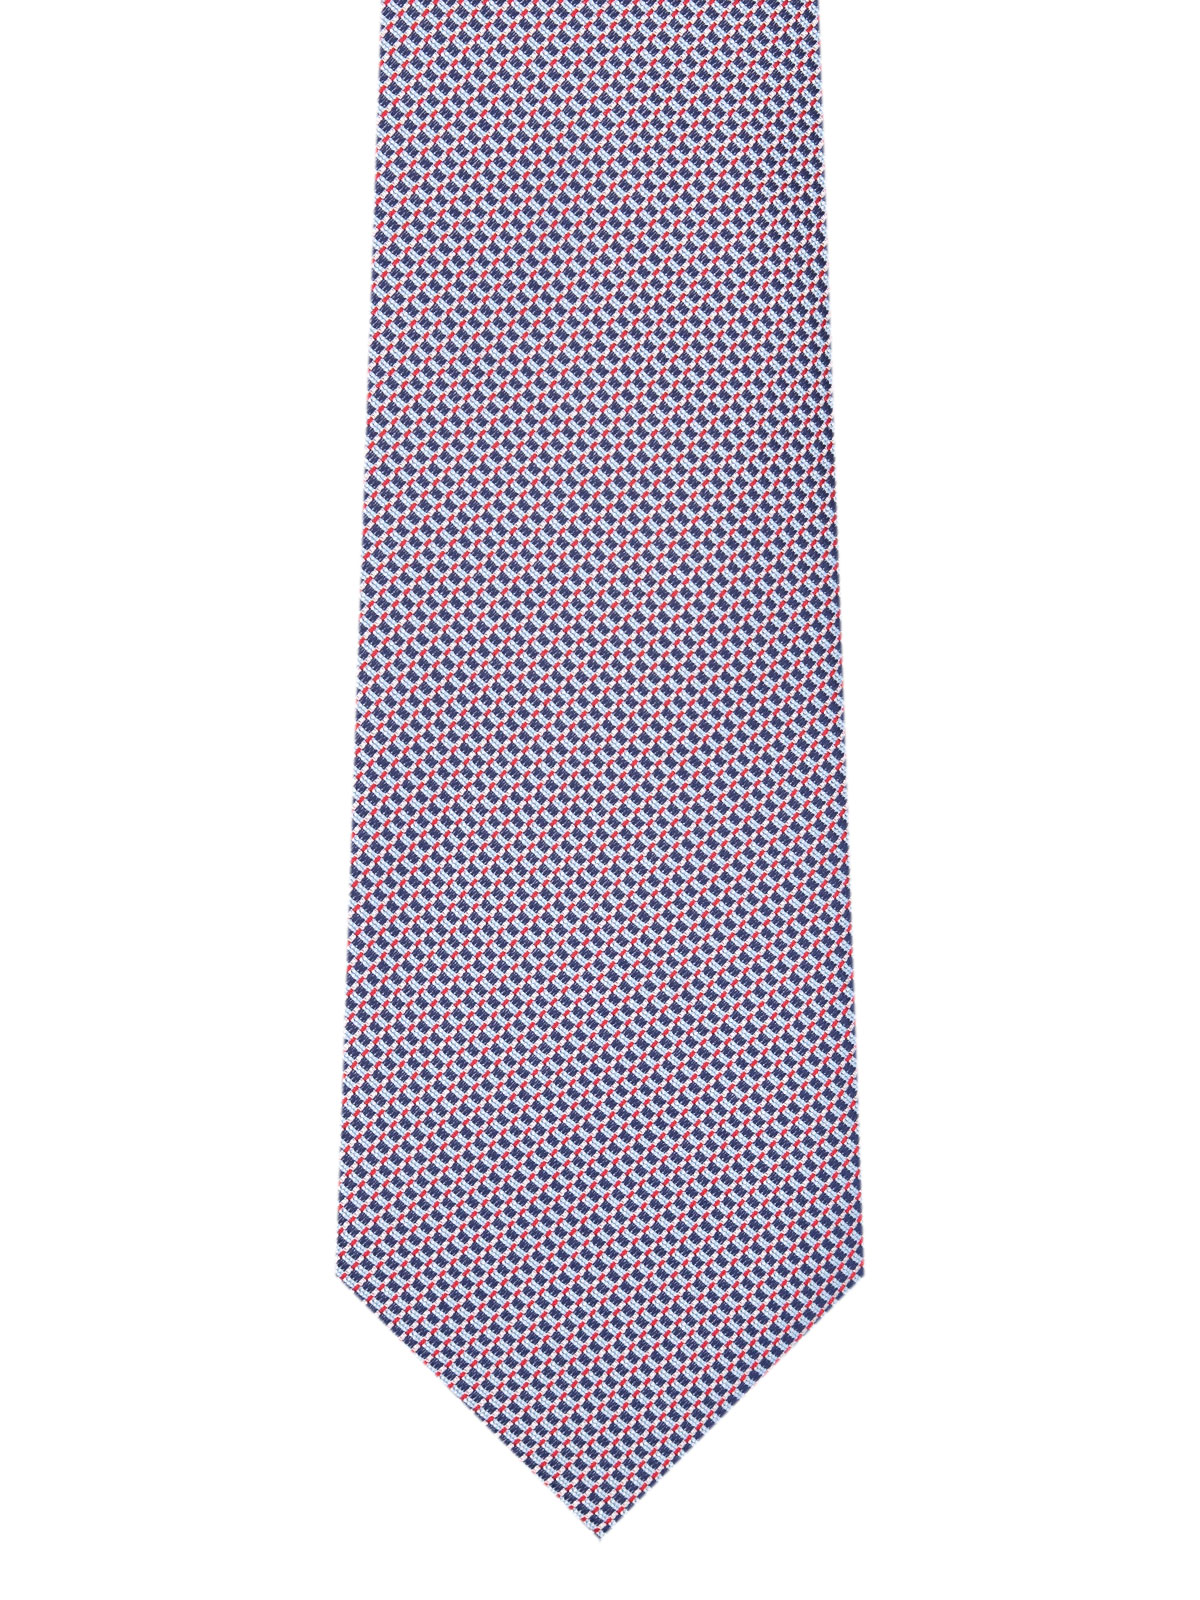 Cravată în albastru cu dungi roșii - 10201 - € 14.06 img2